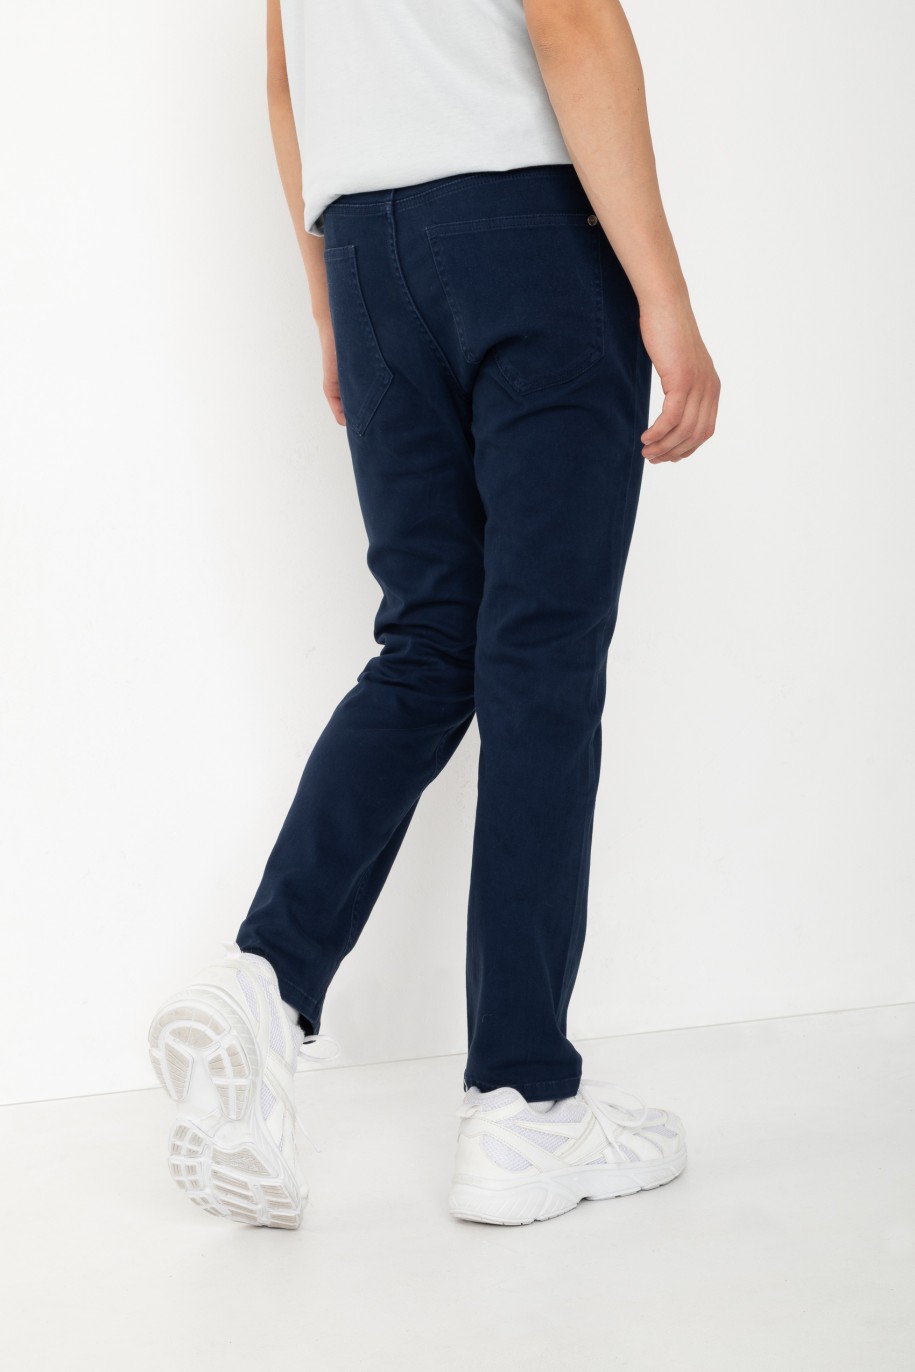 Granatowe spodnie jeansowe o klasycznym kroju - 46446